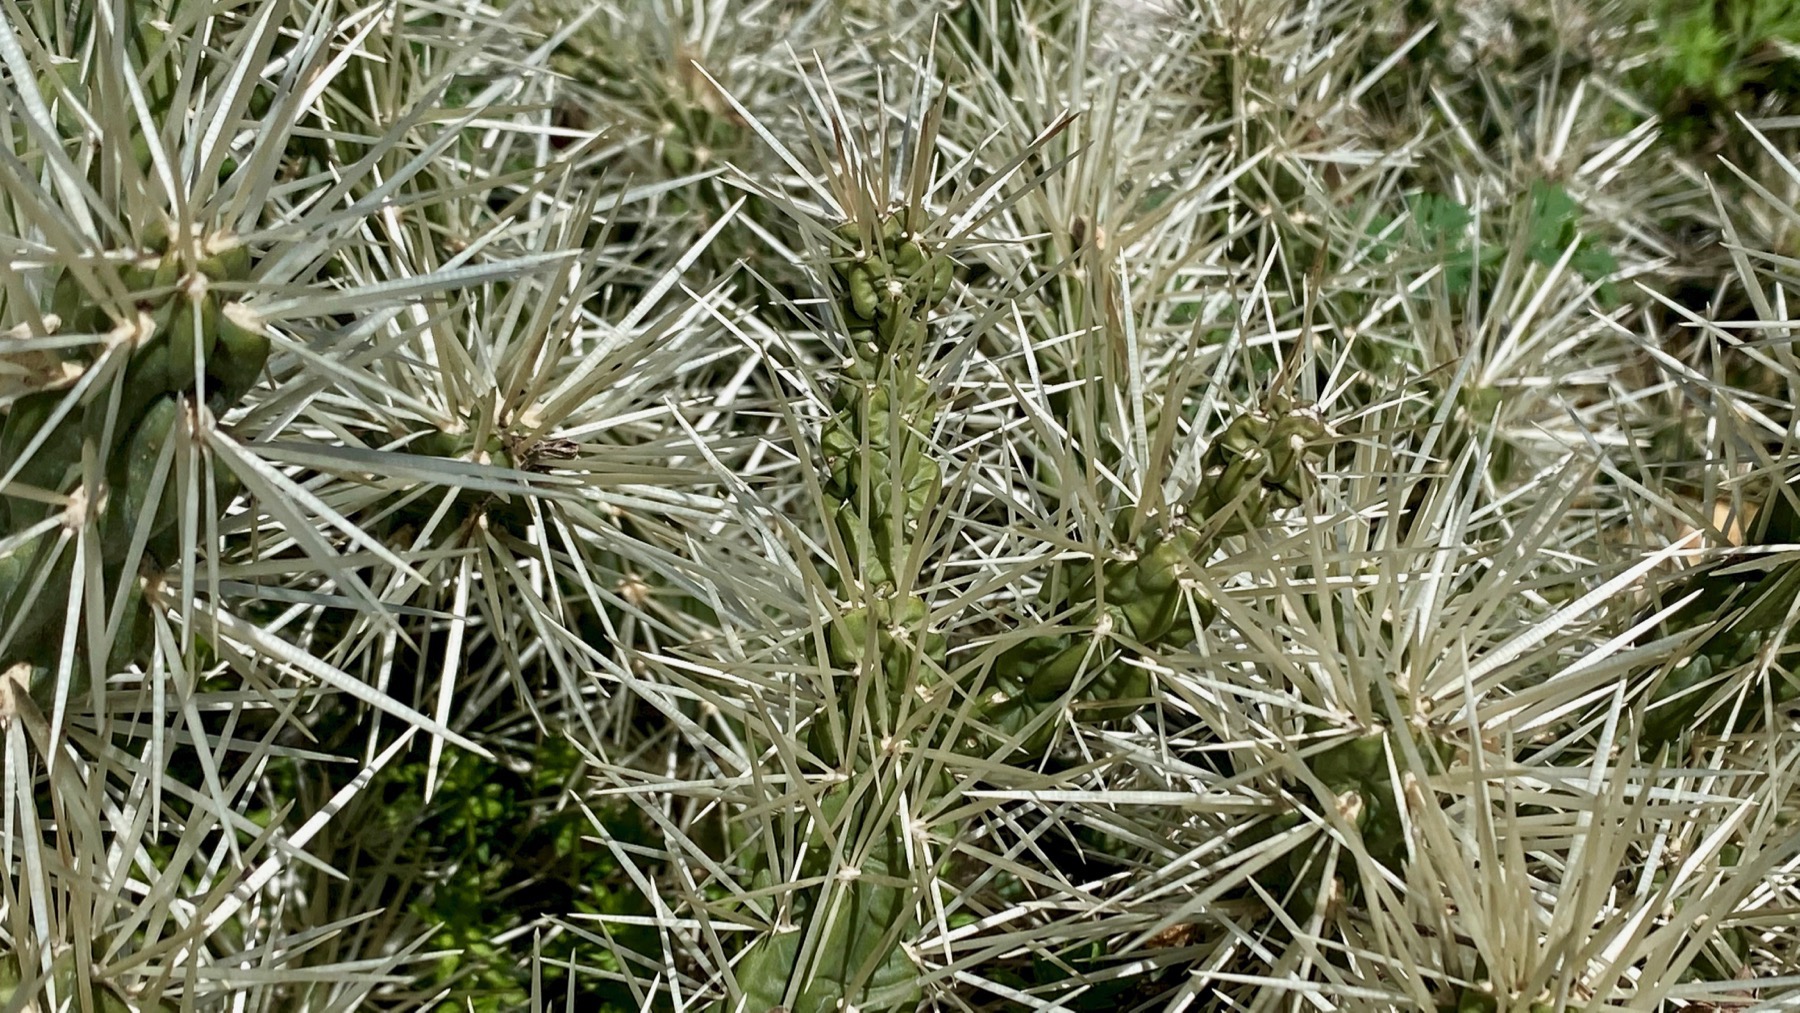 Spiny cacti